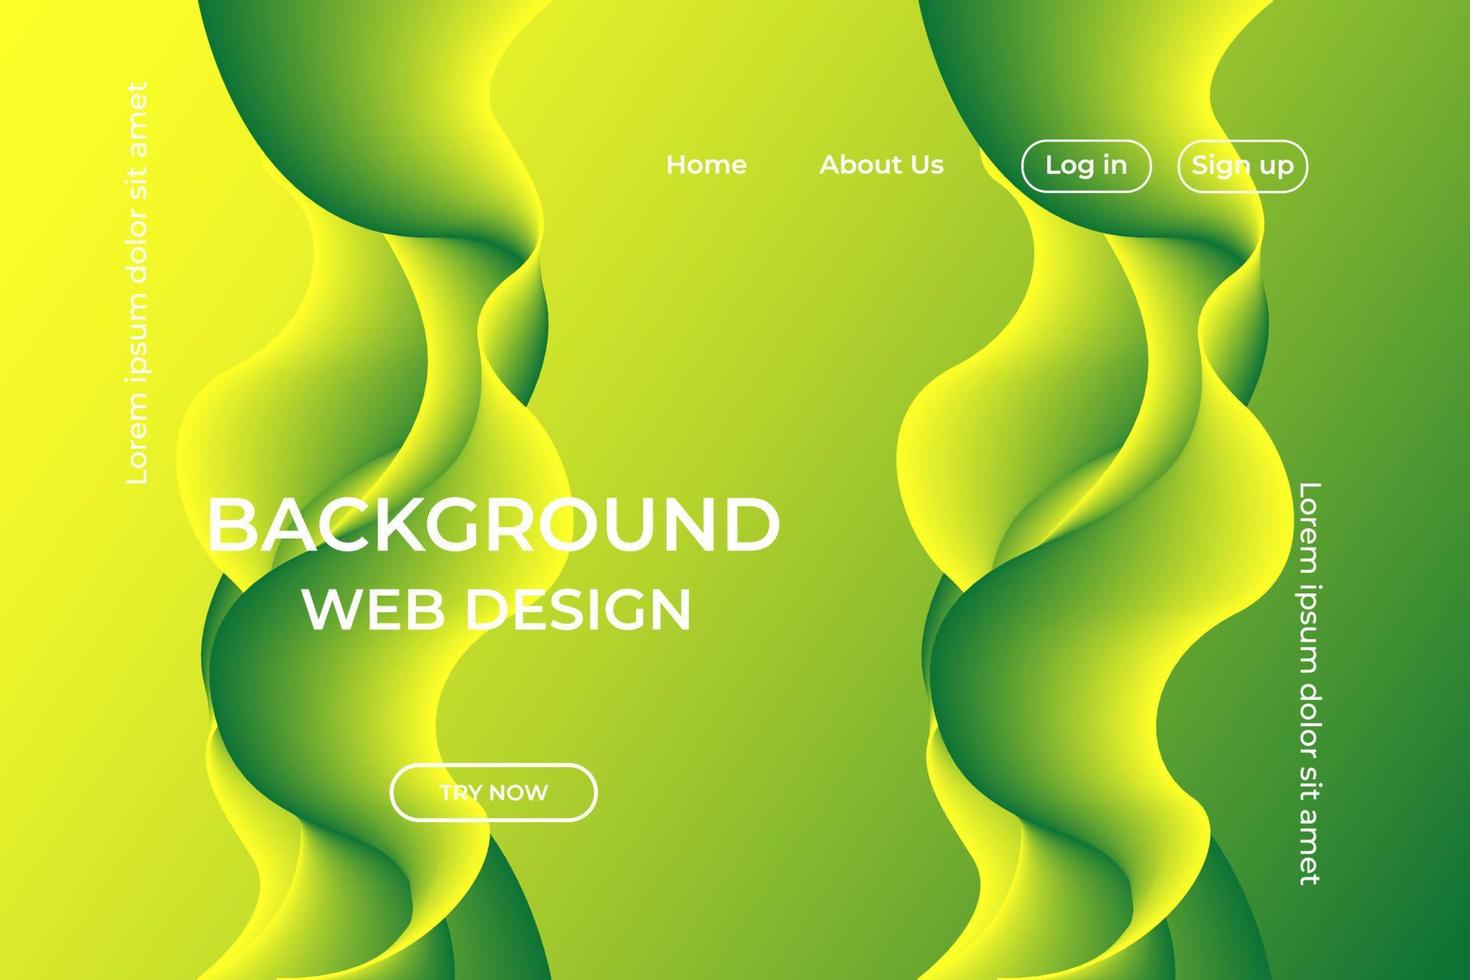 grön våg bakgrund för webbplats, banner, affärspresentation vektor